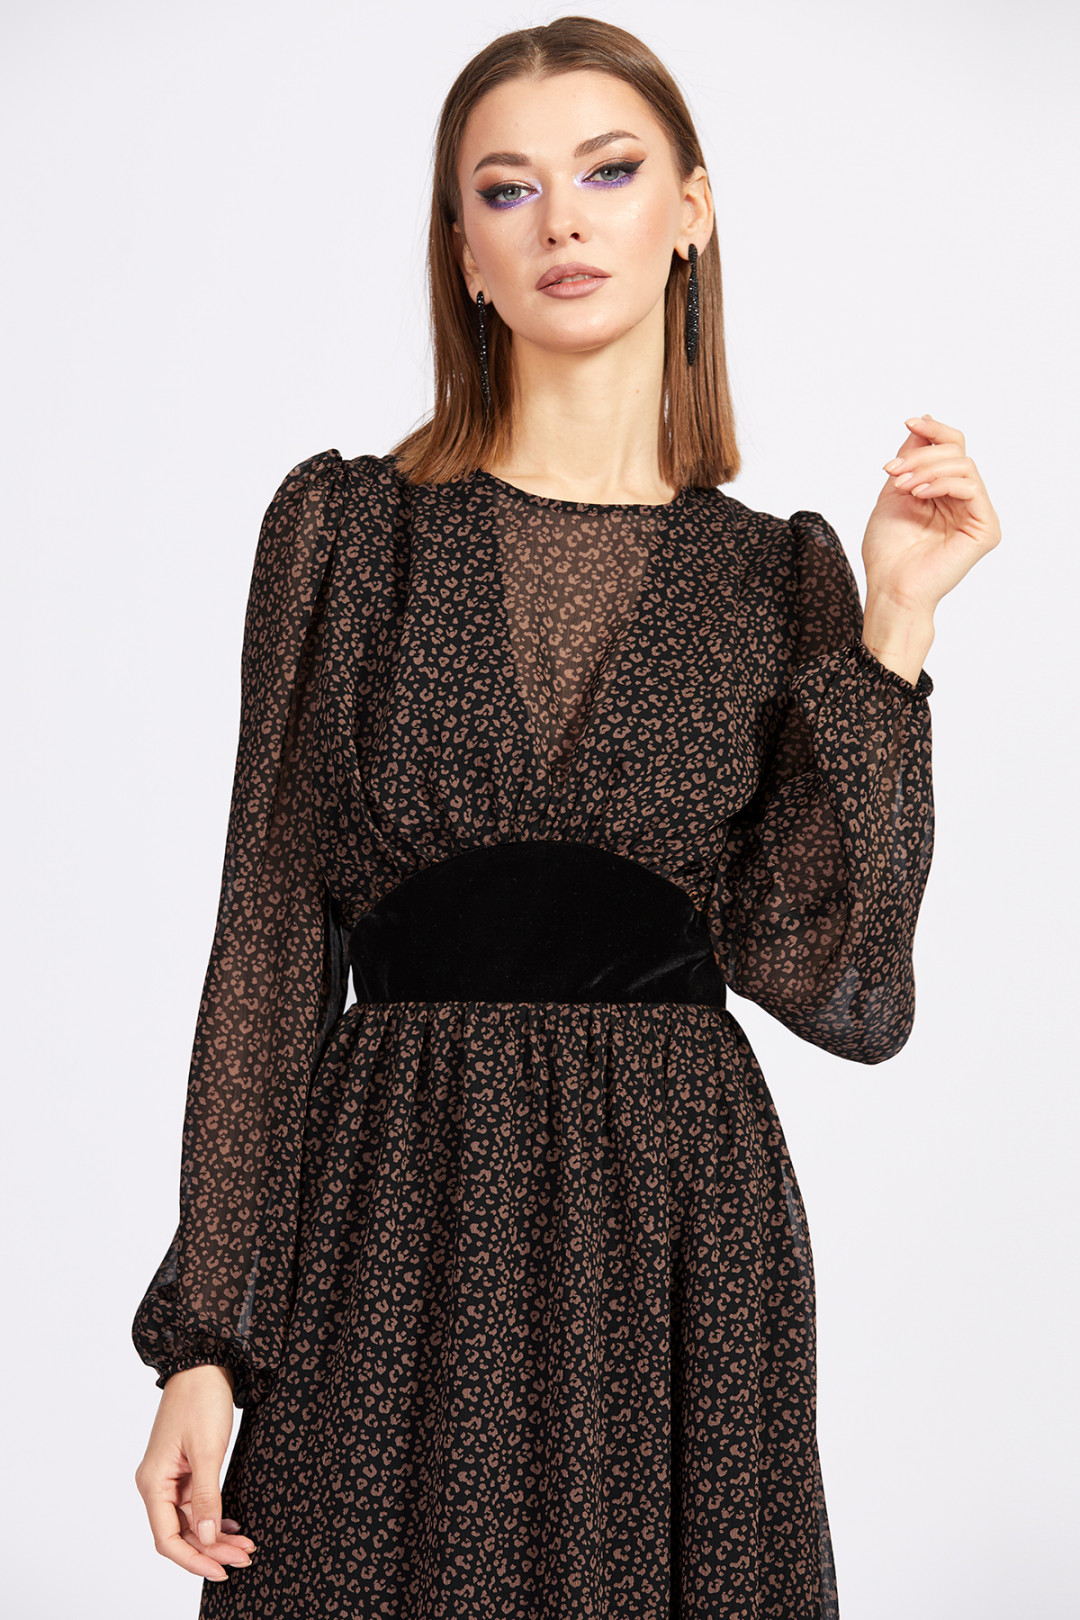 Платье Эола Стиль 2153 черный/коричневый